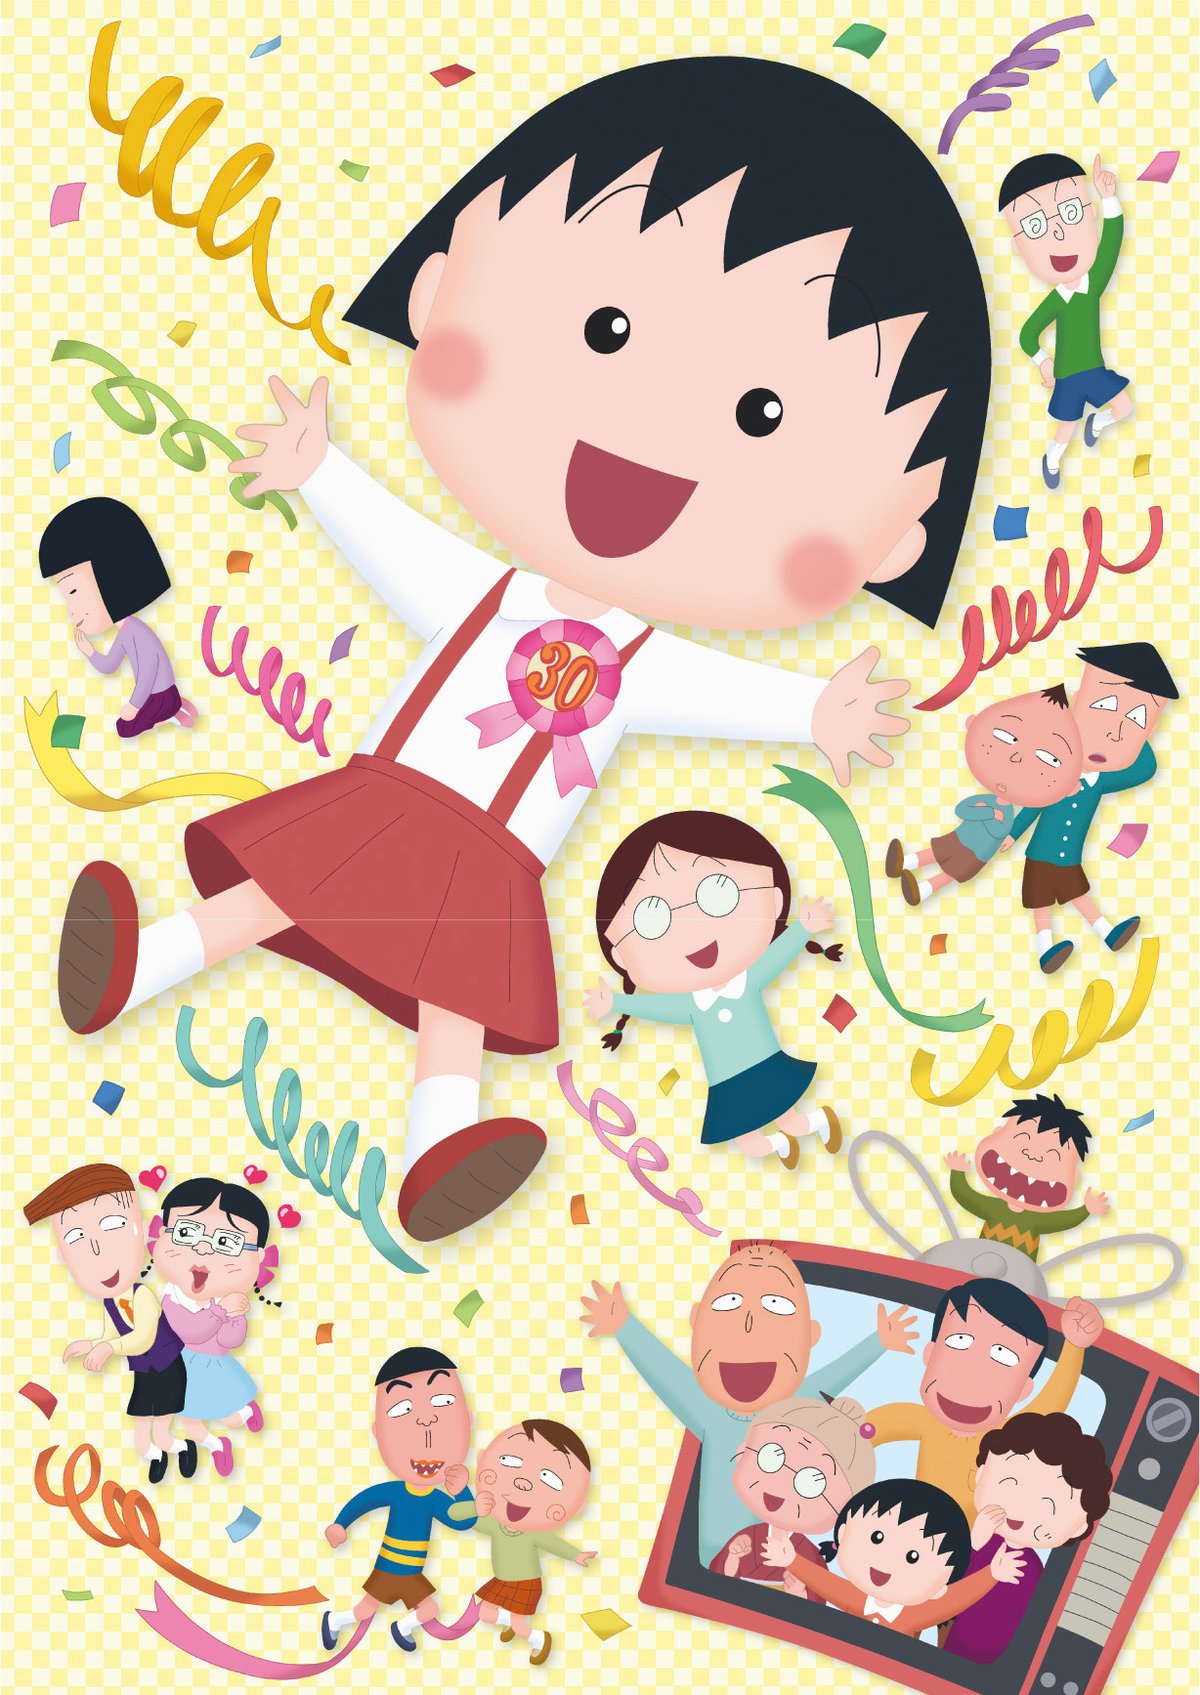 アニメ化30周年記念「ちびまる子ちゃん展」が開催、松屋銀座に